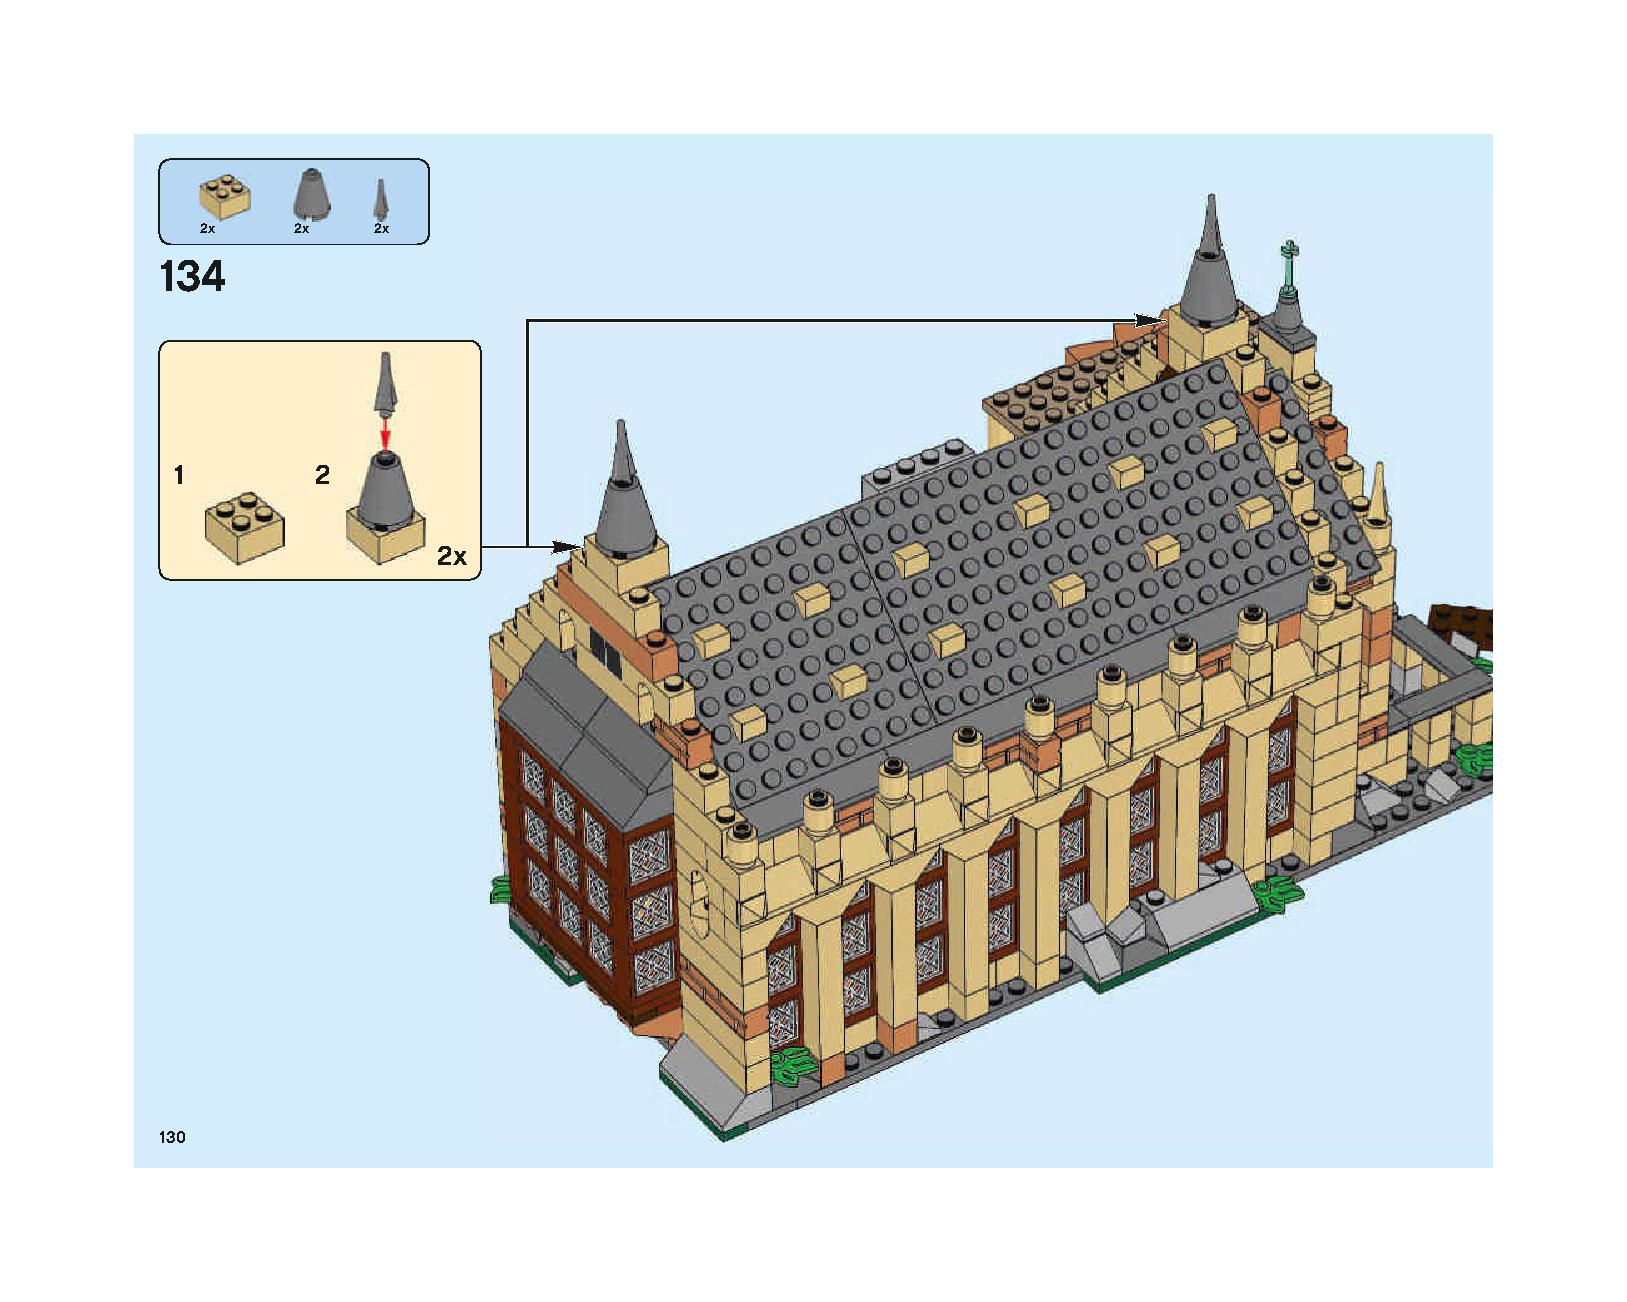 ホグワーツの大広間 75954 レゴの商品情報 レゴの説明書・組立方法 130 page